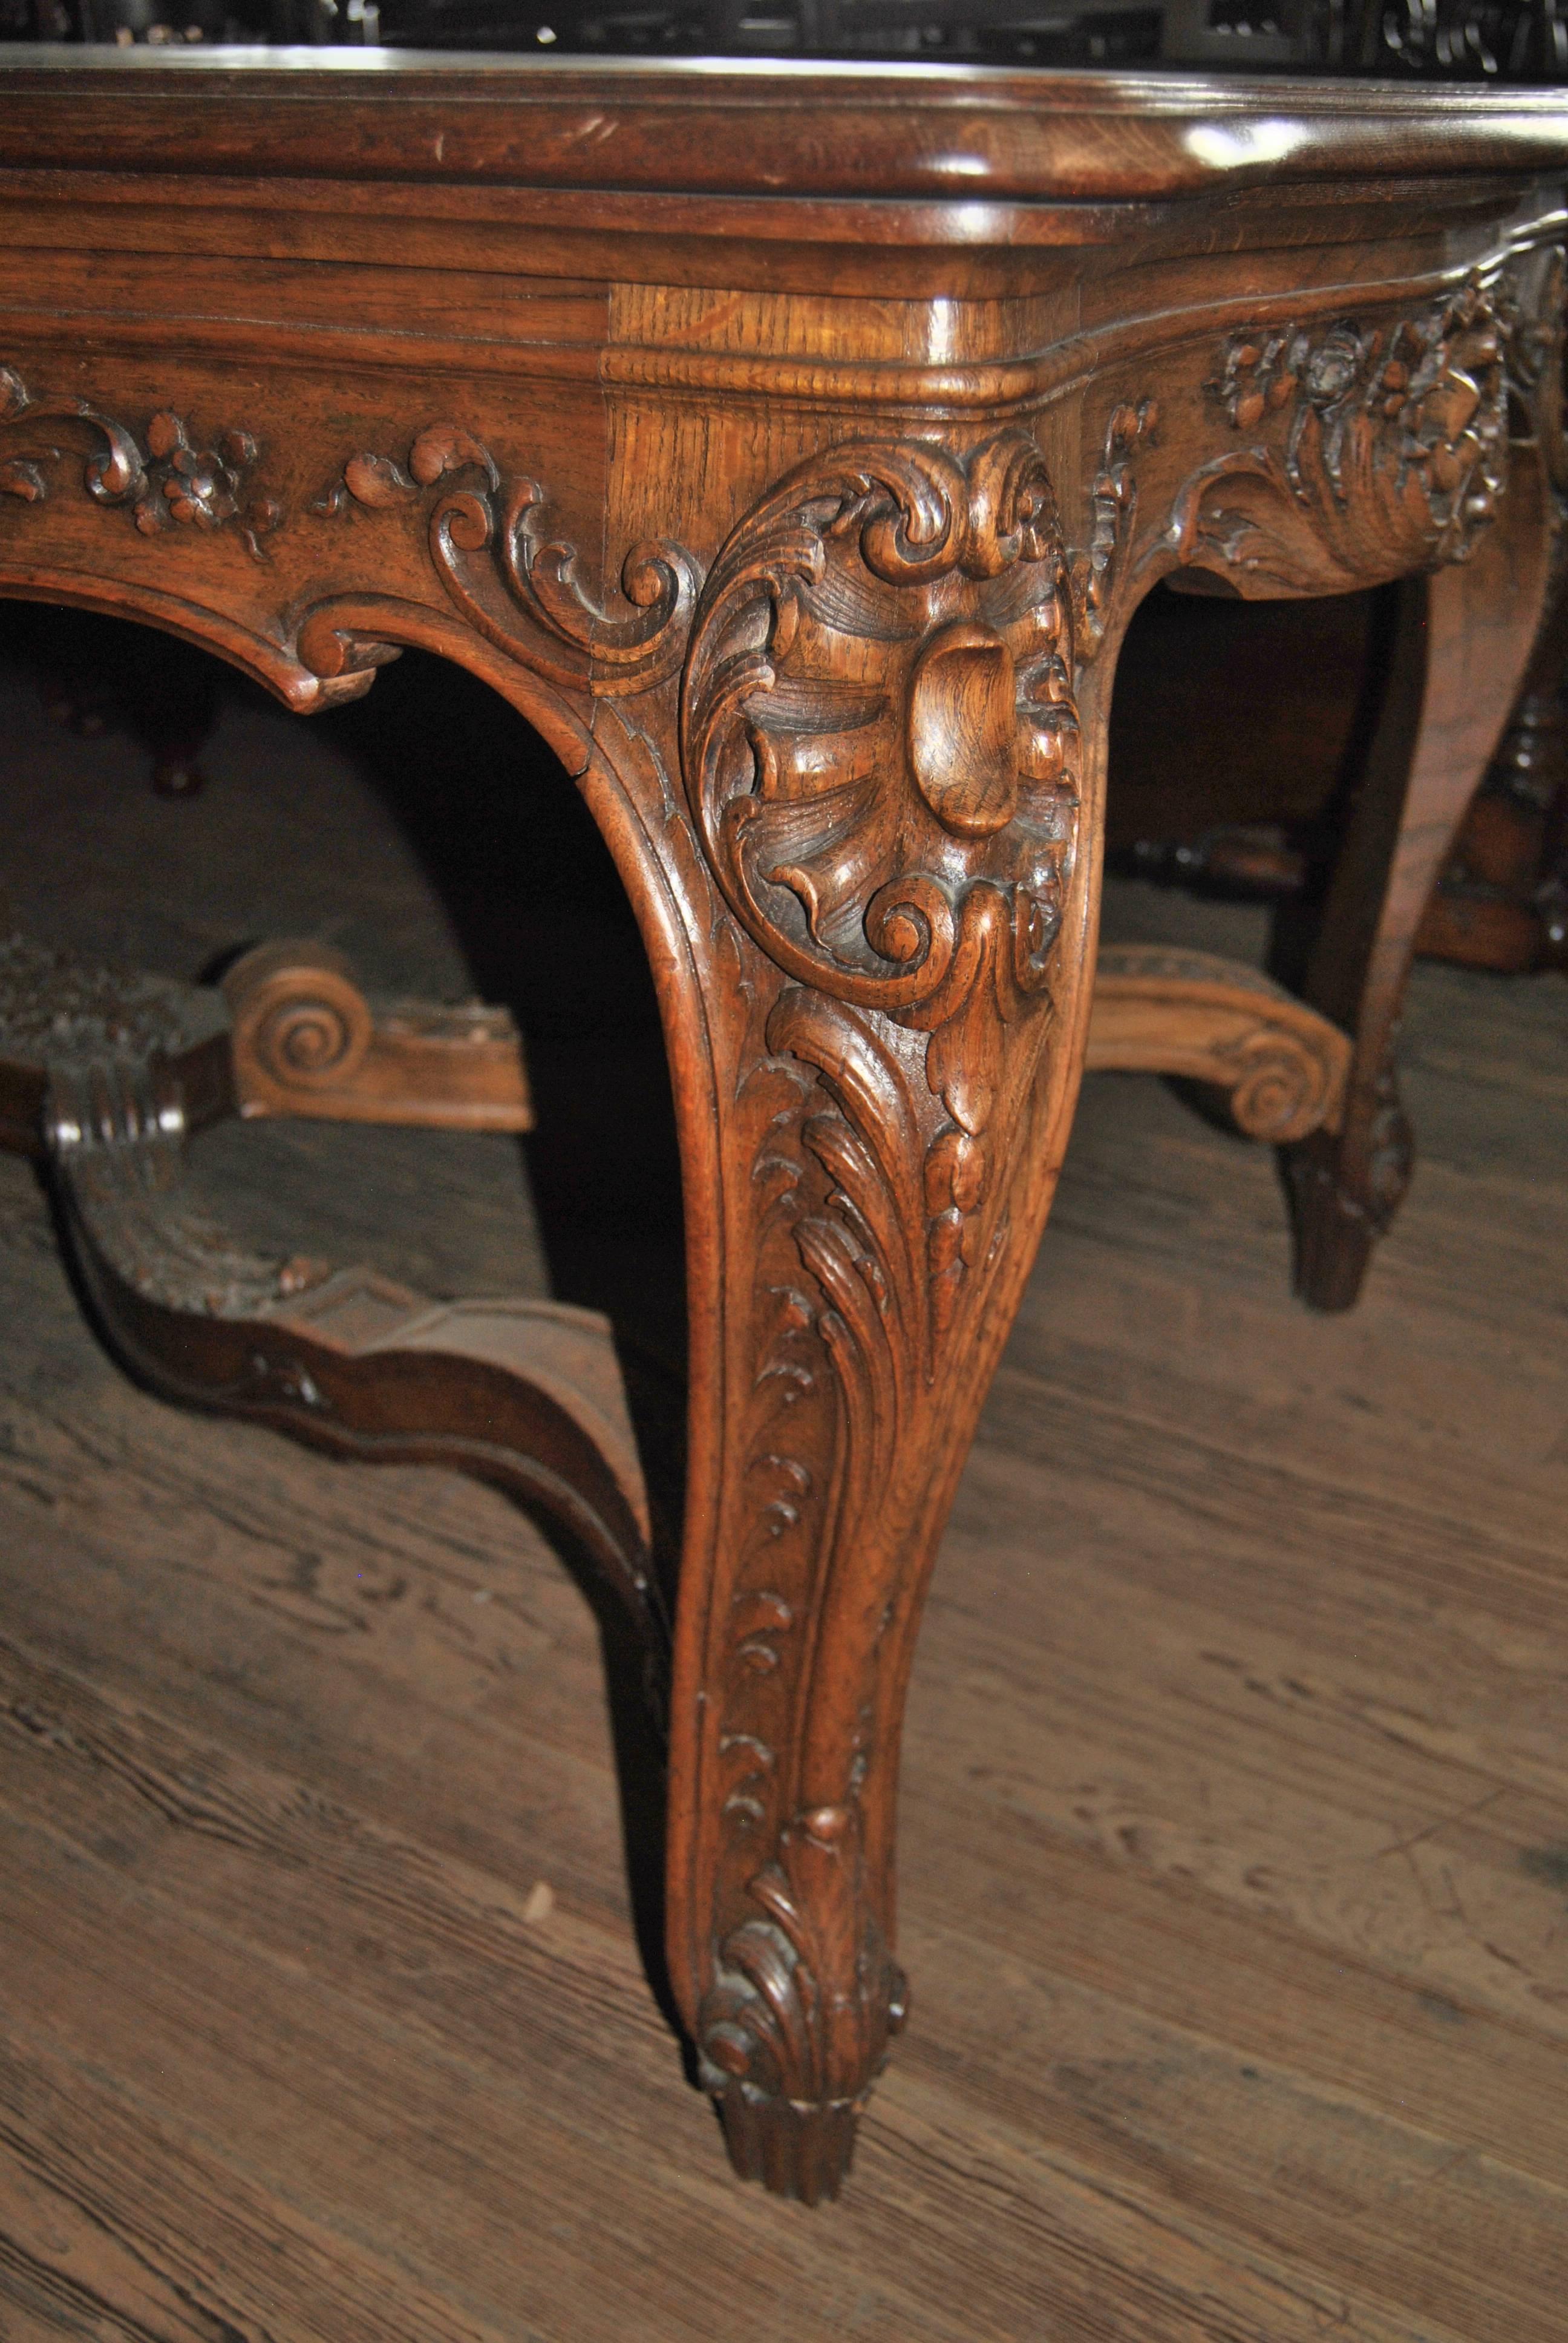 Il s'agit d'une table de qualité fabuleuse, très bien sculptée, fabriquée en France, vers 1920. La table présente des sculptures de qualité extrêmement fine sur toute sa surface. Les côtés et les extrémités de la table sont de forme serpentine avec